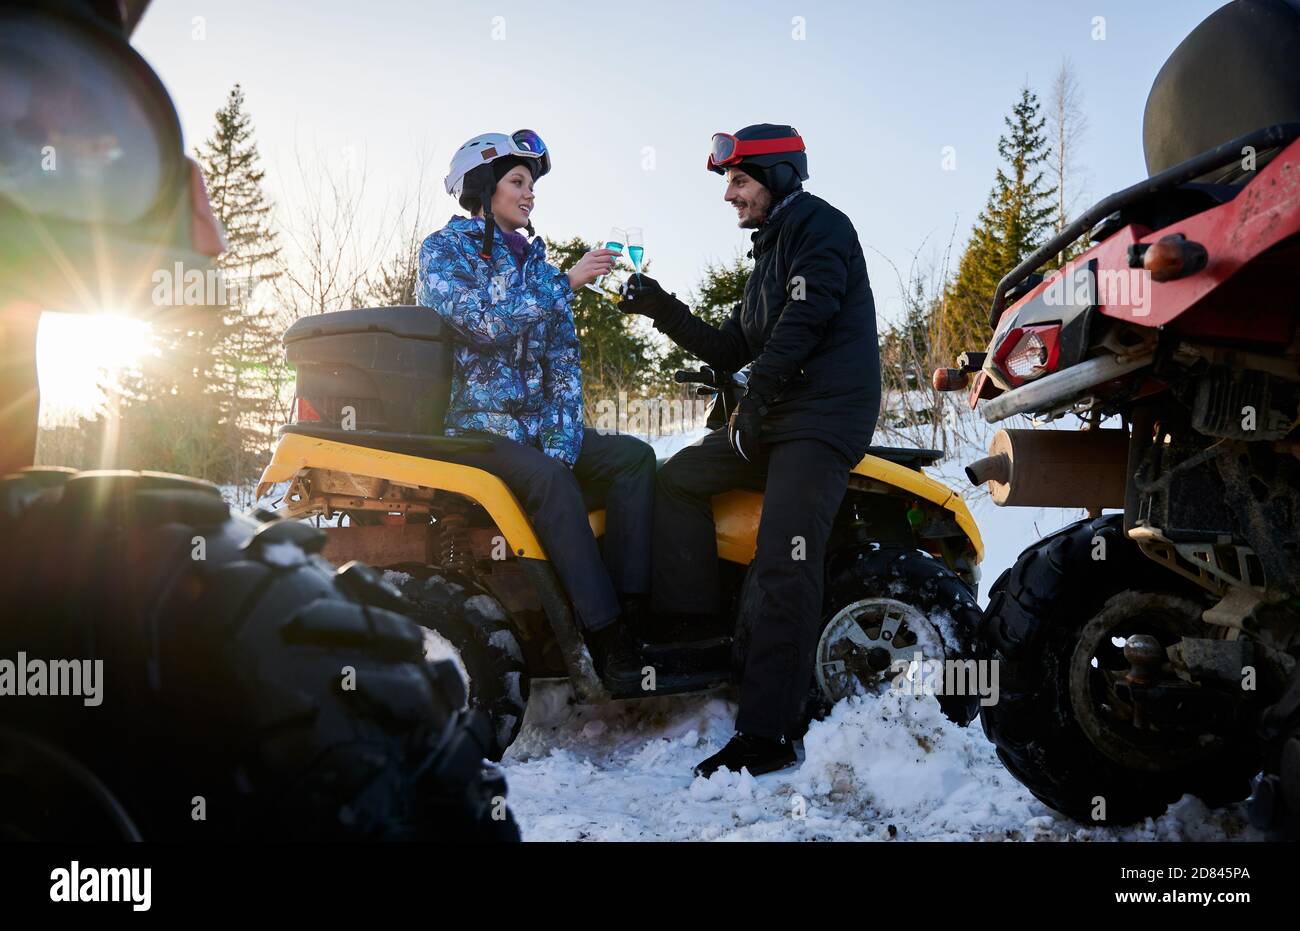 Junges Paar in Winterskianzügen und Helmen, auf gelbem ATV sitzend, zwei Gläser mit blauem Champagner haltend, die sich gegenseitig anschauten. Sonniger Wintertag. Riesige Räder anderer ATV stehen im Vordergrund Stockfoto